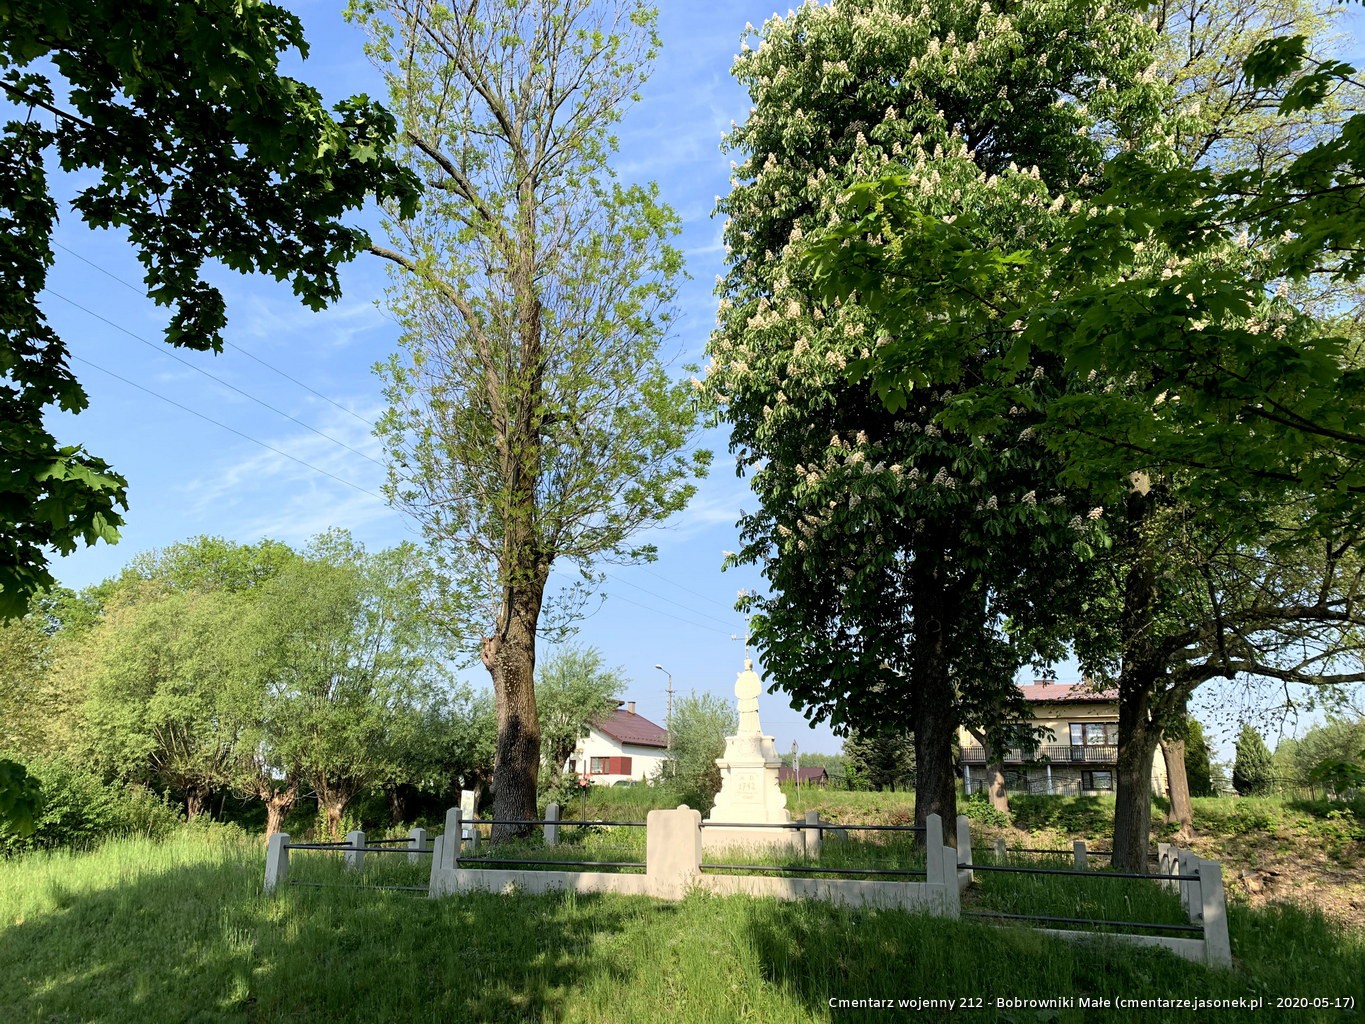 Cmentarz wojenny 212 - Bobrowniki Małe